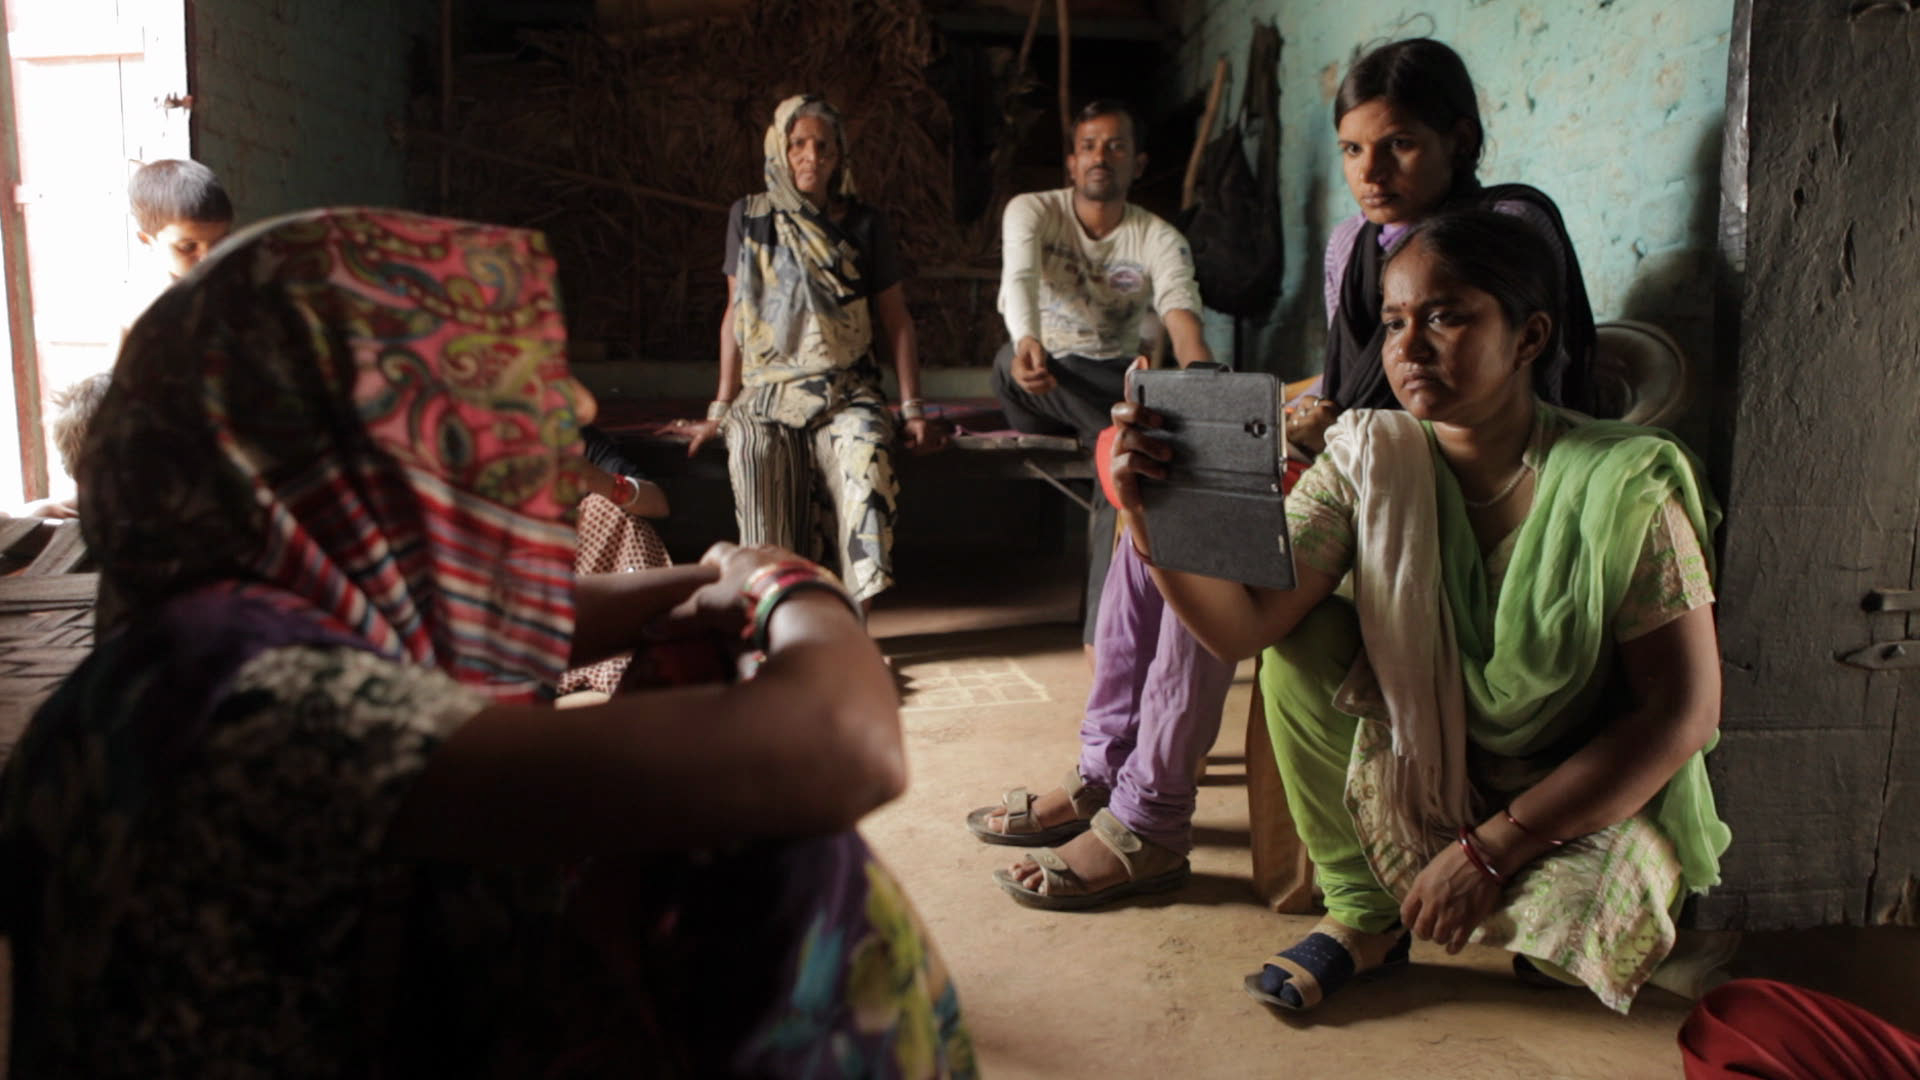 Skupinka žen sedí na hliněné podlaze v přízemním domku. Jedna z nich nahrává video do mobilu.